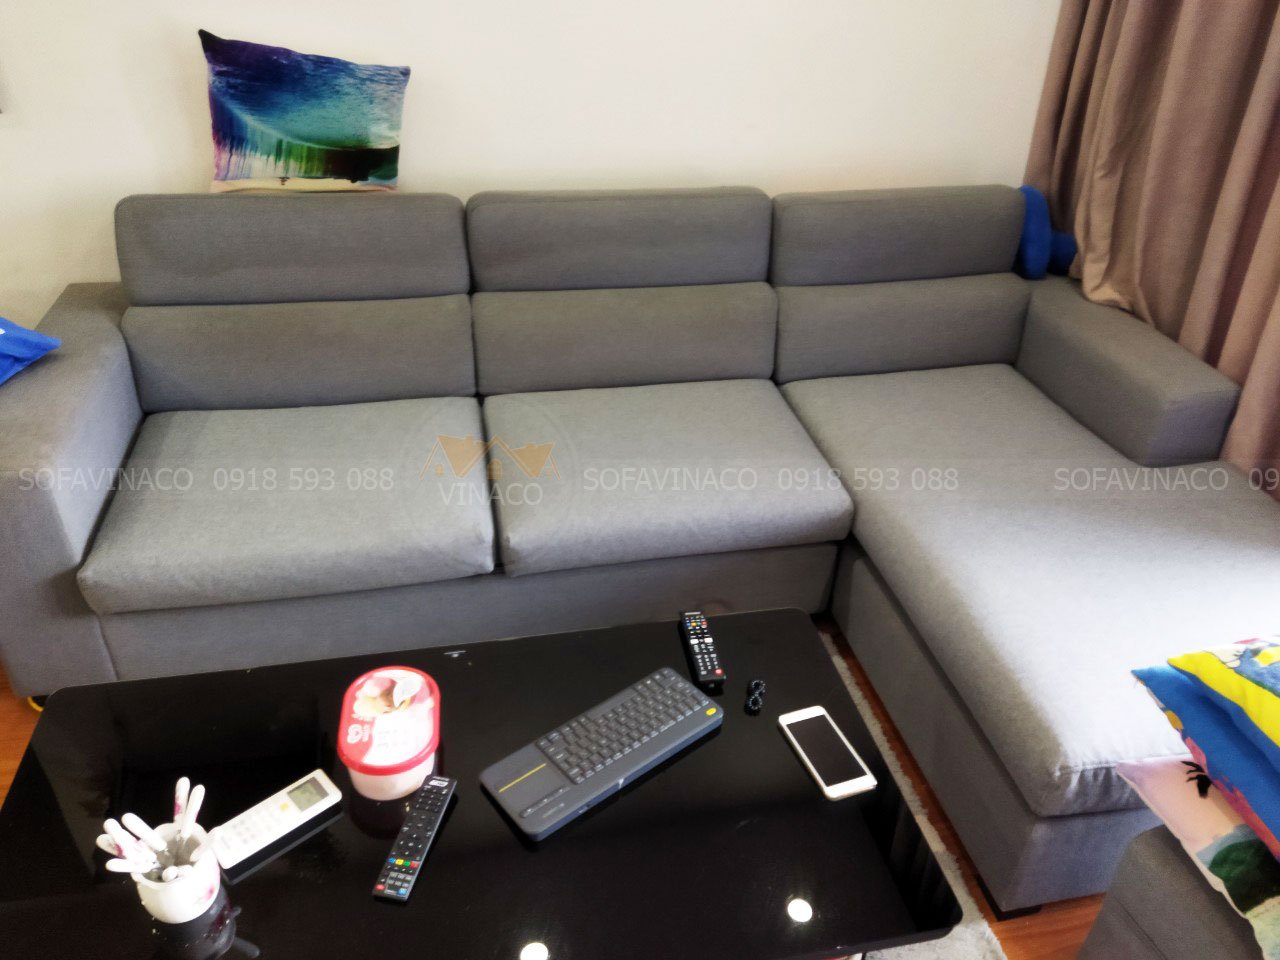 Bí quyết chọn bọc ghế sofa đẹp cho phòng khách nhà bạn